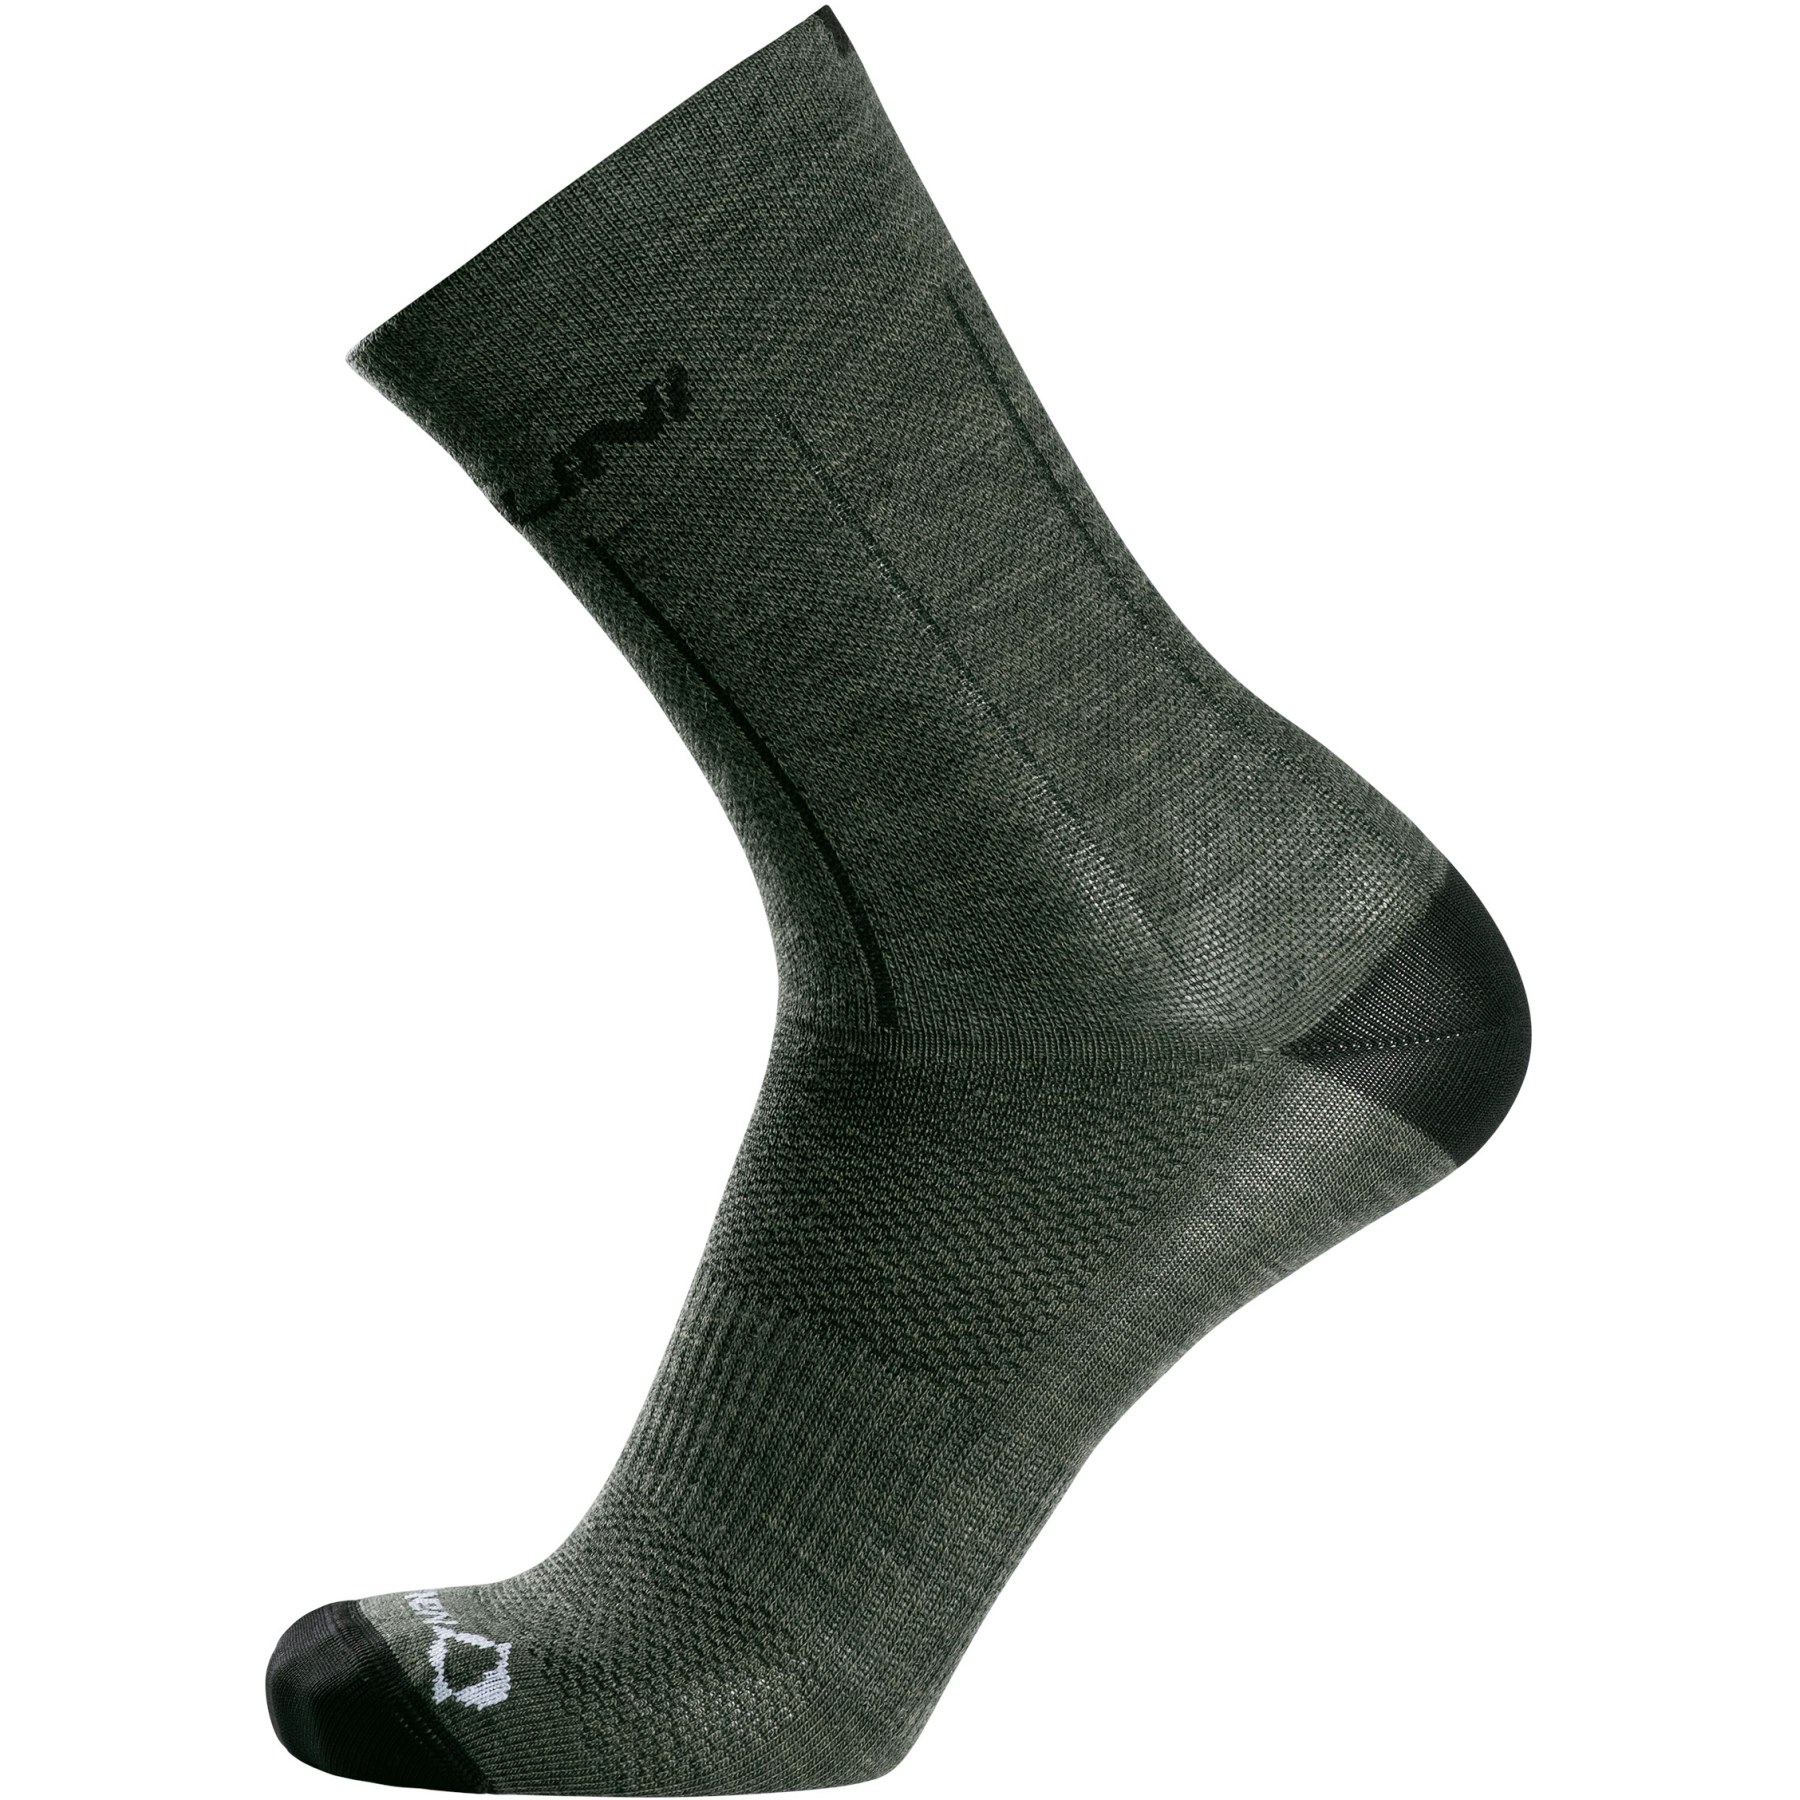 Produktbild von Nalini New Woll-Socken - oliv-grün 4250